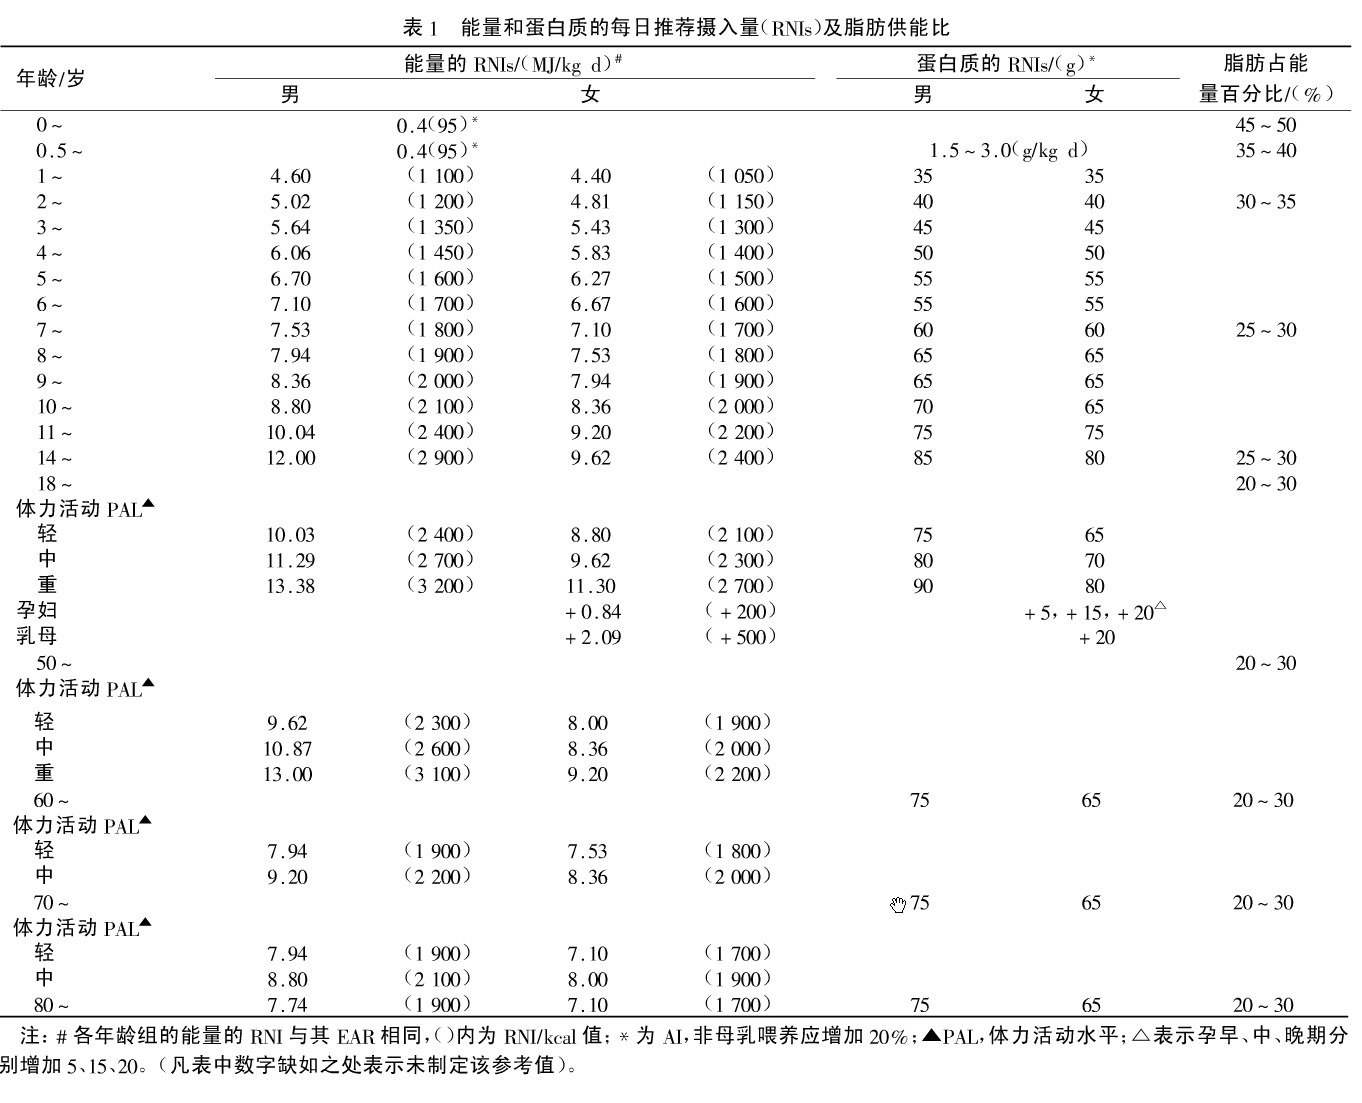 中国居民膳食营养素参考摄入量表（DRIs）